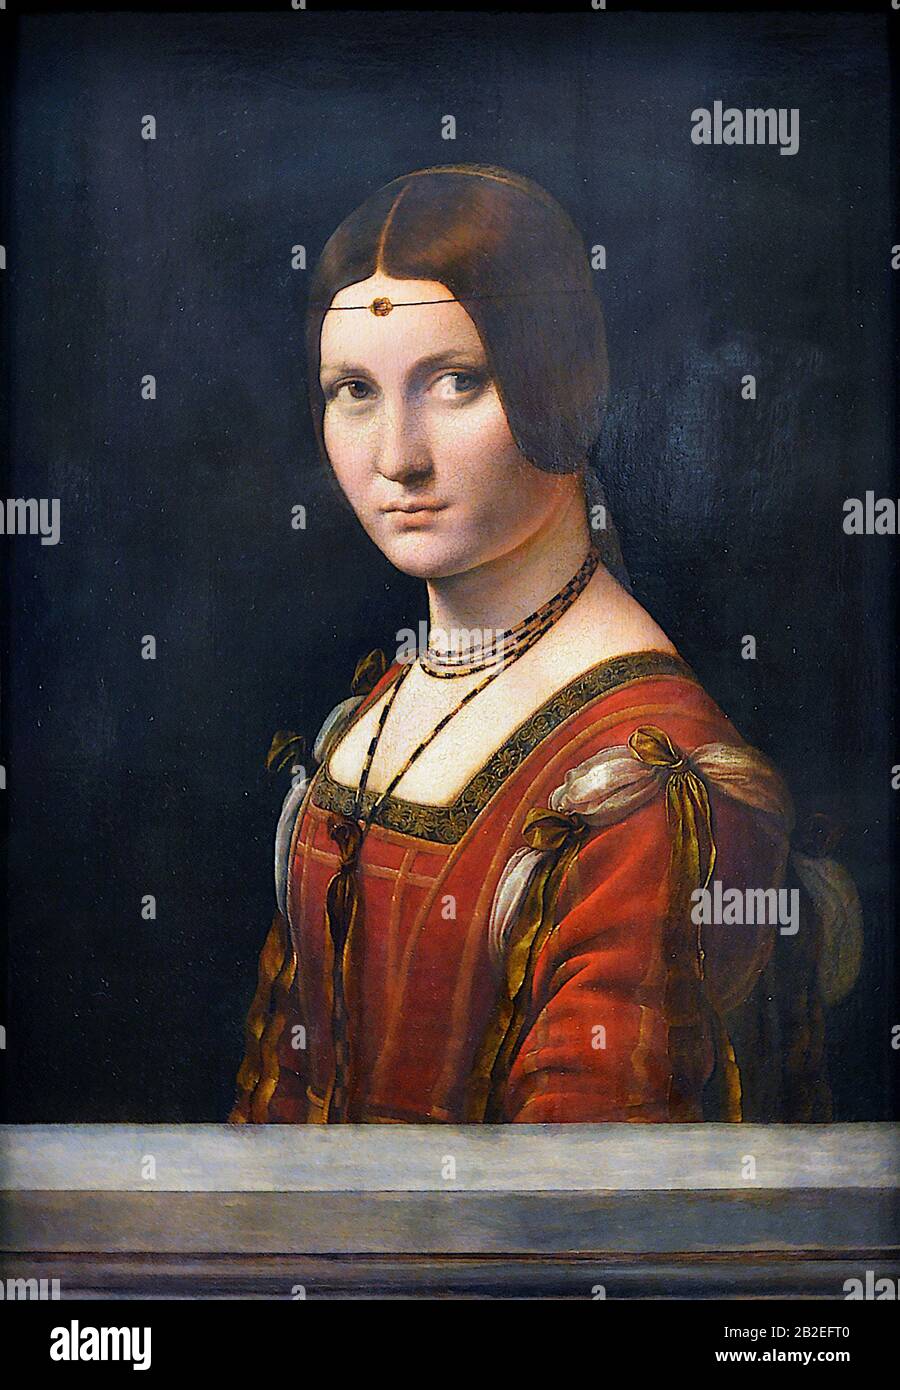 La belle ferronnière (Ritratto di una donna sconosciuta) (circa 1490) di Leonardo da Vinci - Immagine Di Altissima qualità e risoluzione Foto Stock